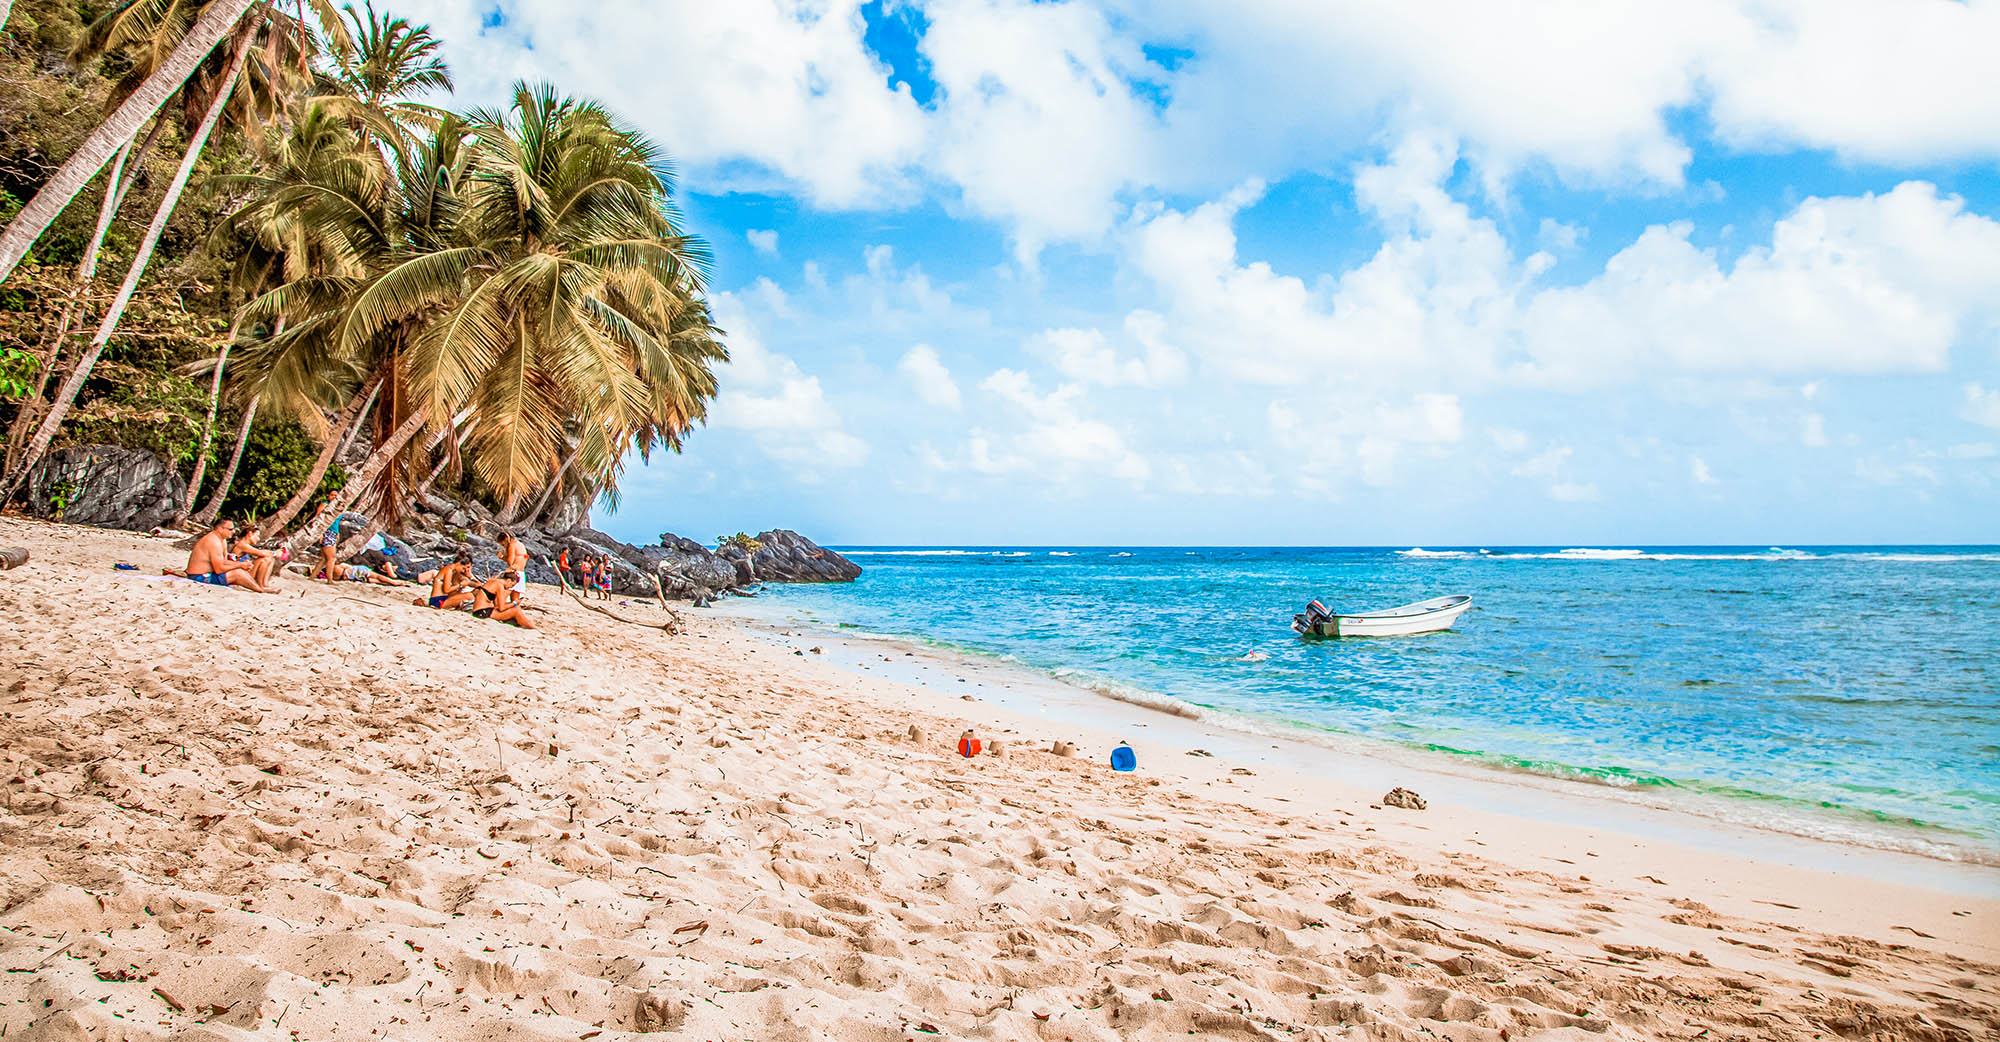 Playa Fronton, Dominican Republic